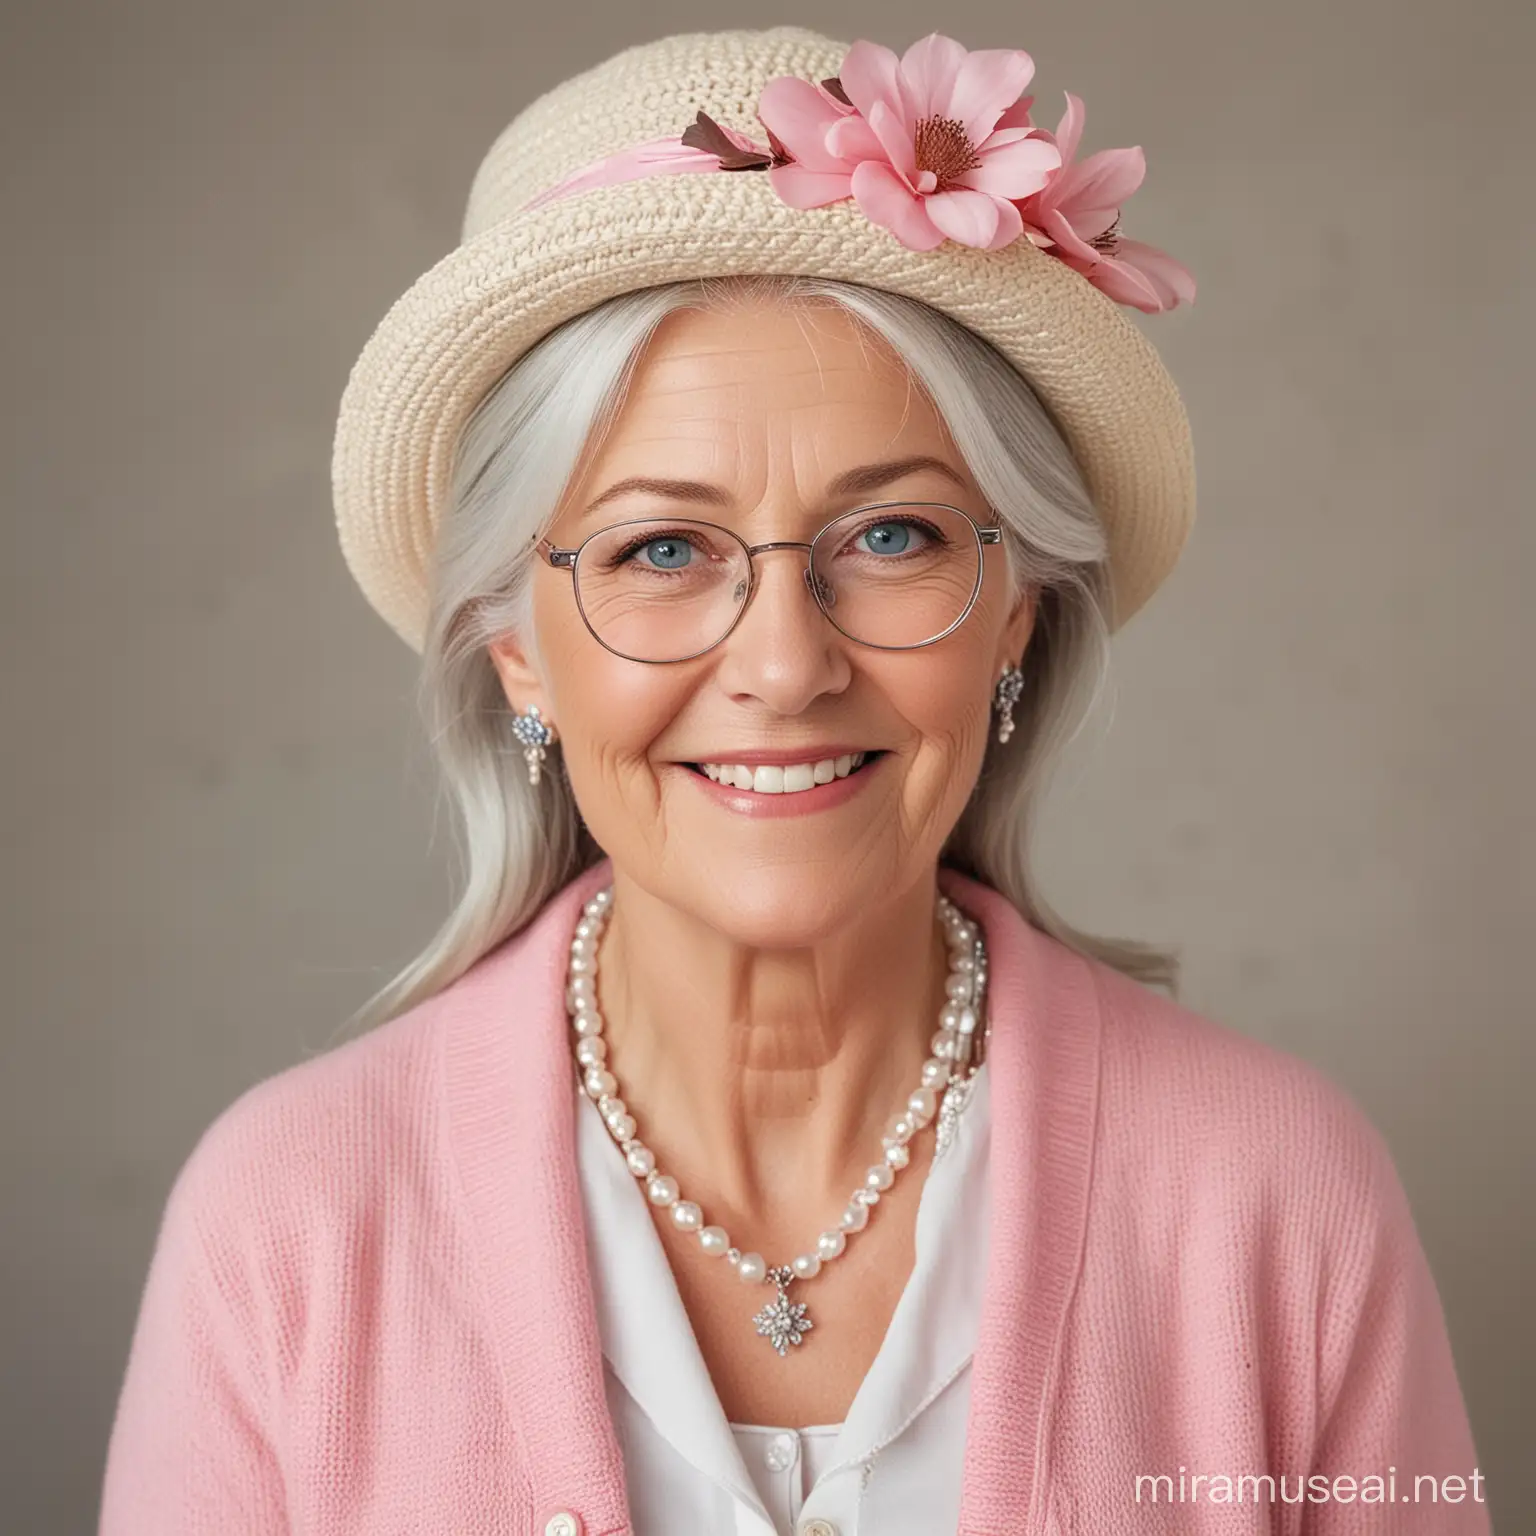 En ældre kvinde med langt, gråt hår og blå øjne. Hun har et rundt ansigt og et venligt smil. Hun er iført en lyserød kjole, en hvid cardigan og perlesmykker. Hun har en brillekæde om halsen og en hat med en blomst på hovedet. Hun ser sød og elegant ud.